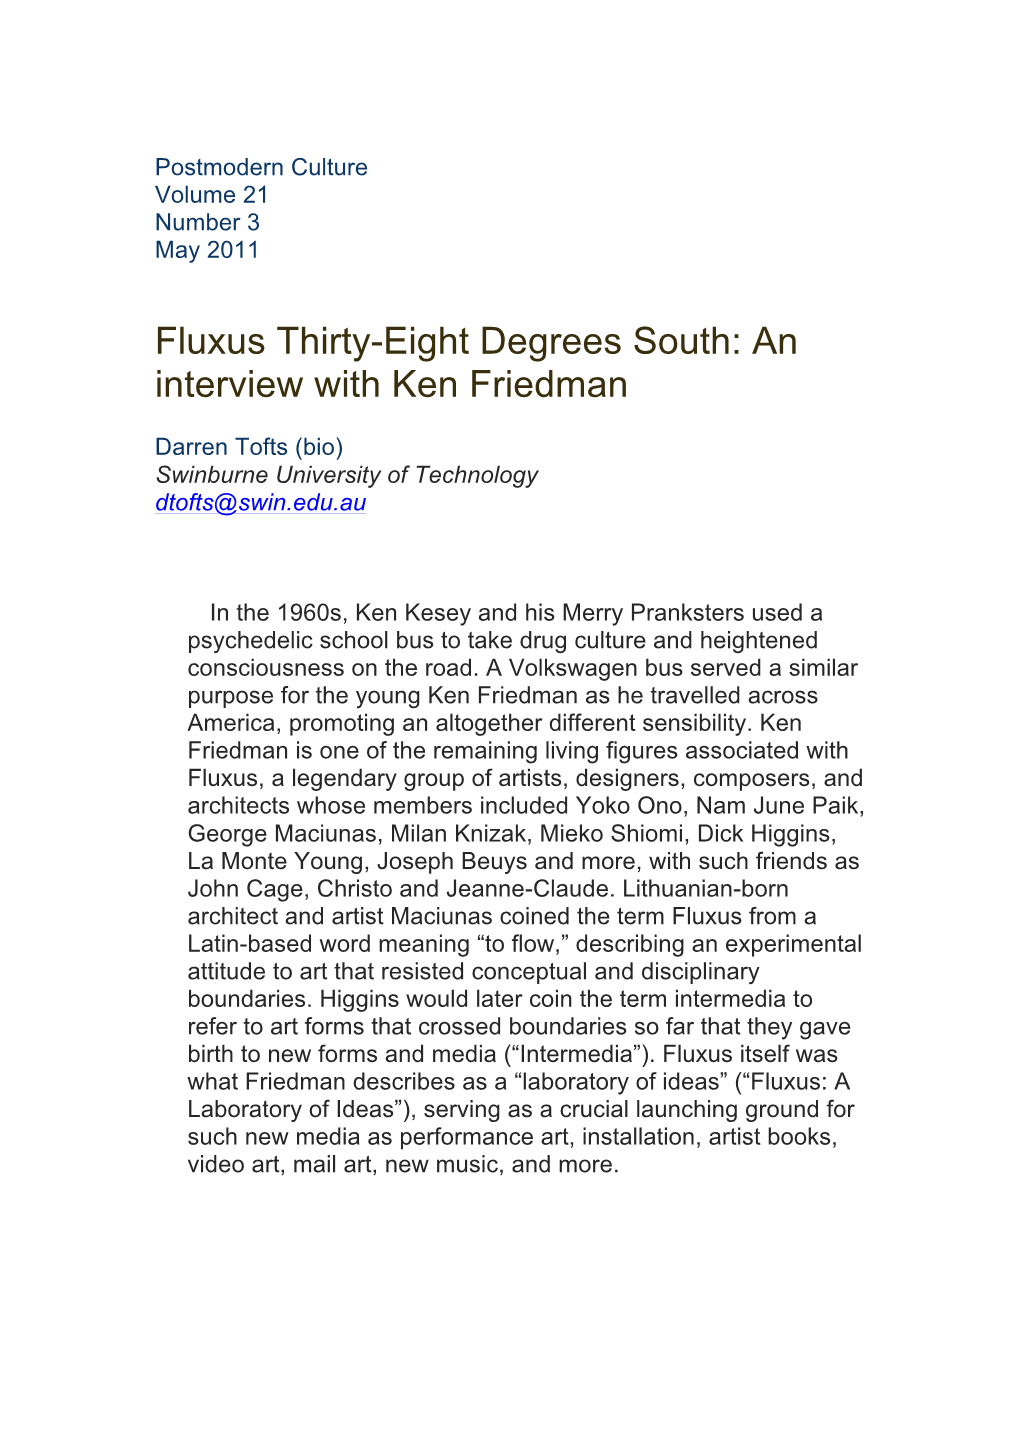 Friedman V 2012 Tofts Interview Pg